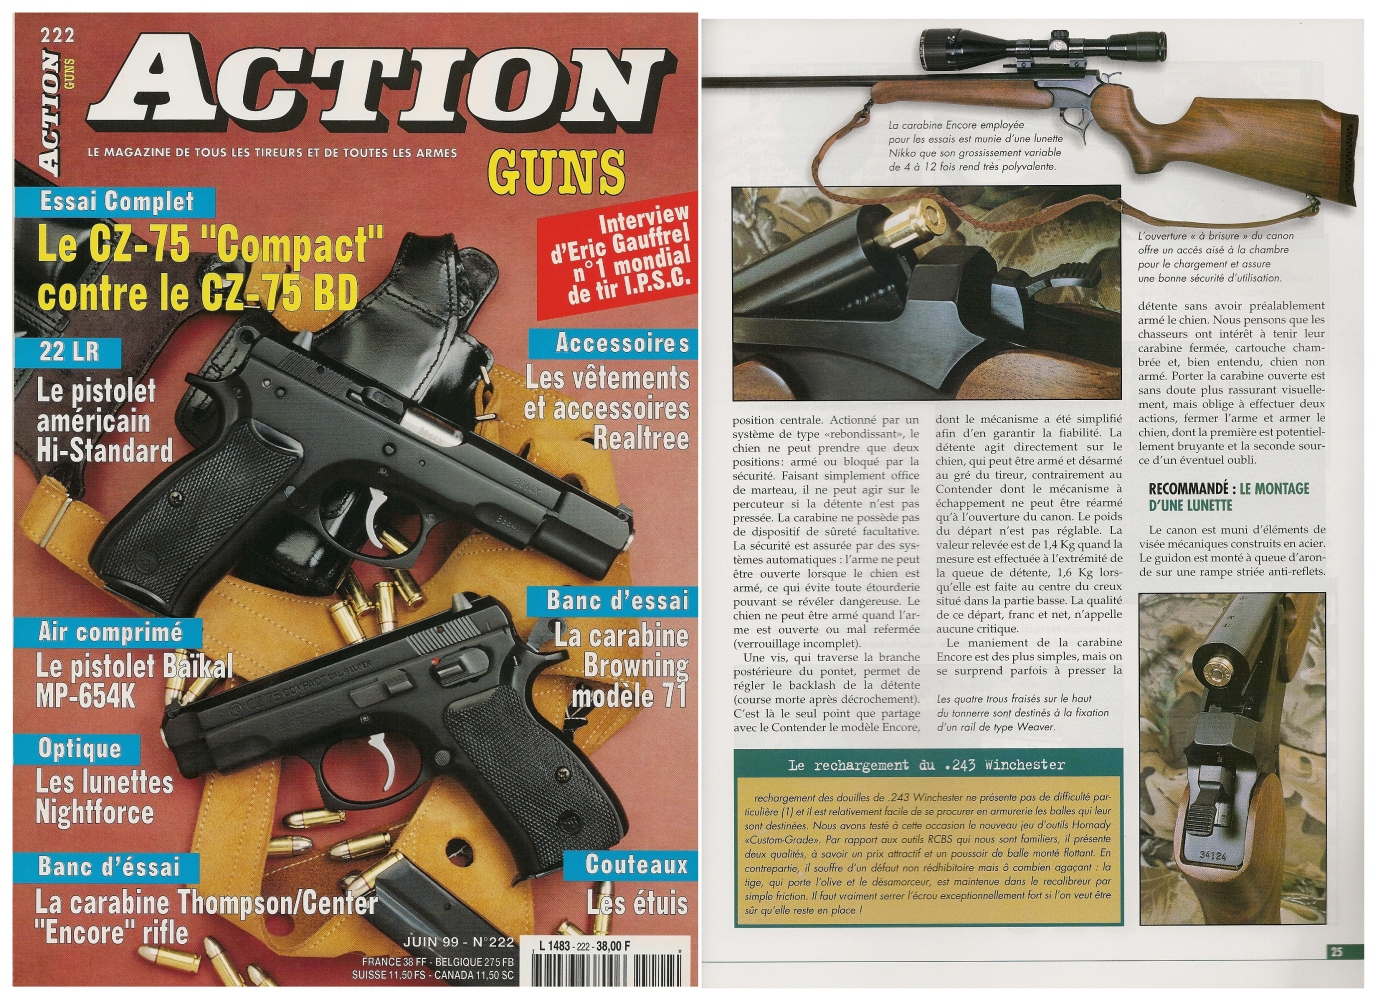 Le banc d’essai de la carabine Thompson/Center « Encore » a été publié sur 5 pages dans le magazine Action Guns n°222 (juin 1999). 